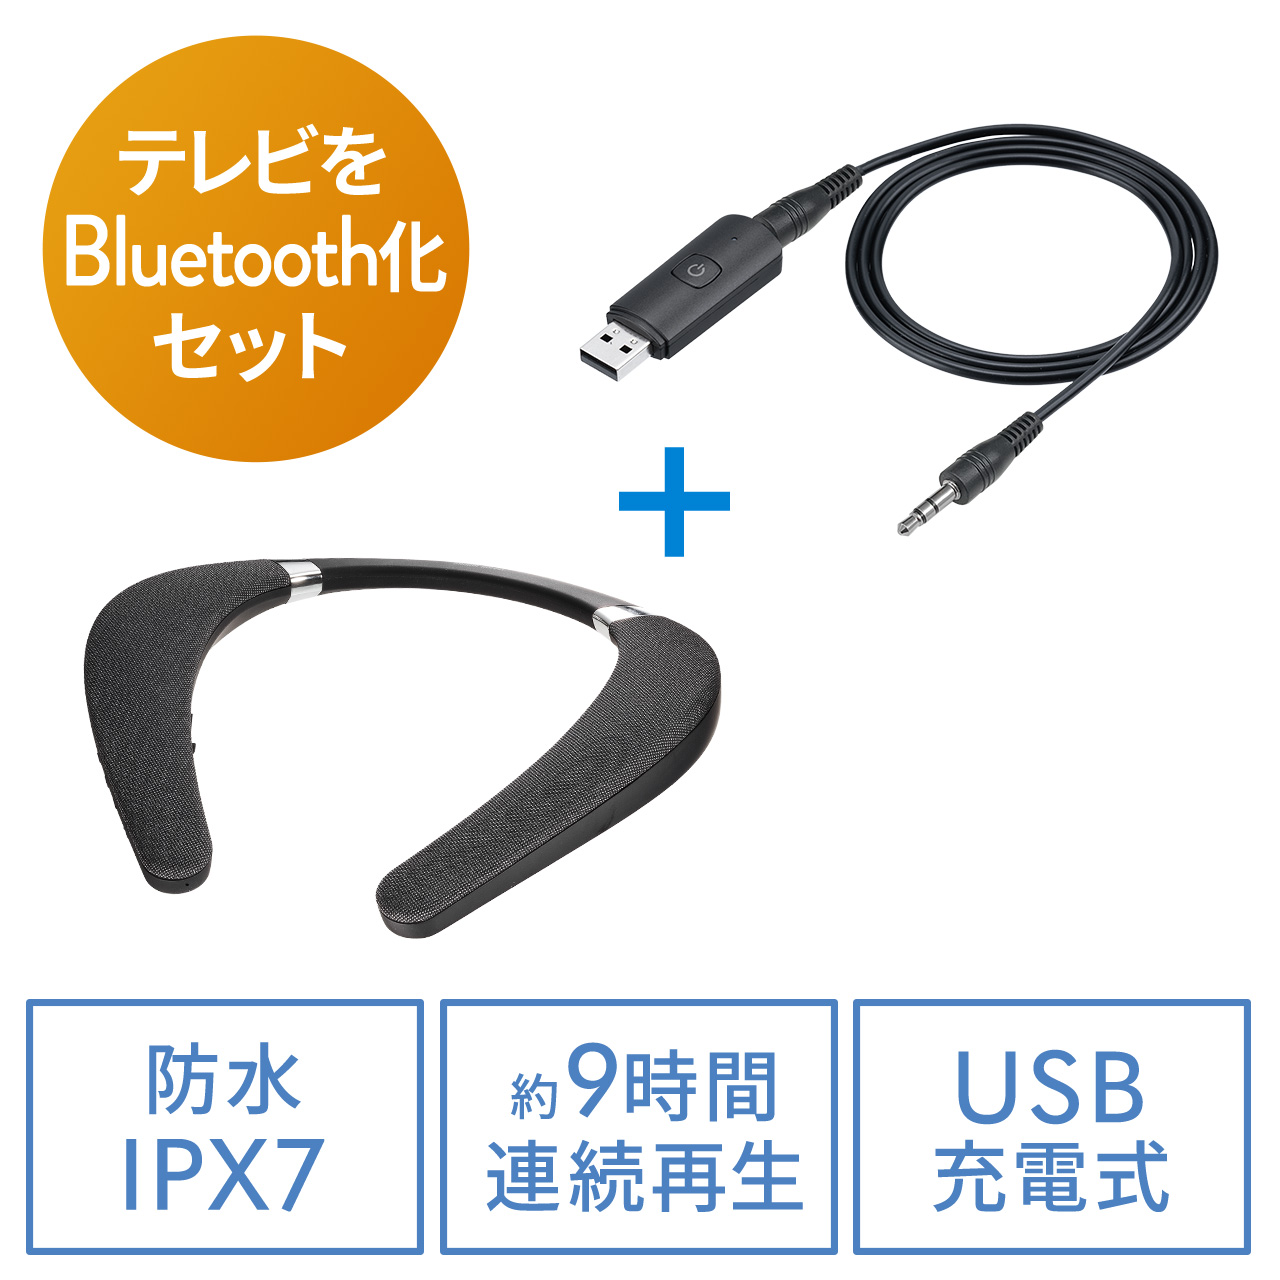 ネックスピーカー 有線対応 マイク搭載 Bluetoothワイヤレス 防水IPX7対応 首掛け Bluetoothトランスミッターセット  402-SP102SET1の販売商品 | 通販ならサンワダイレクト